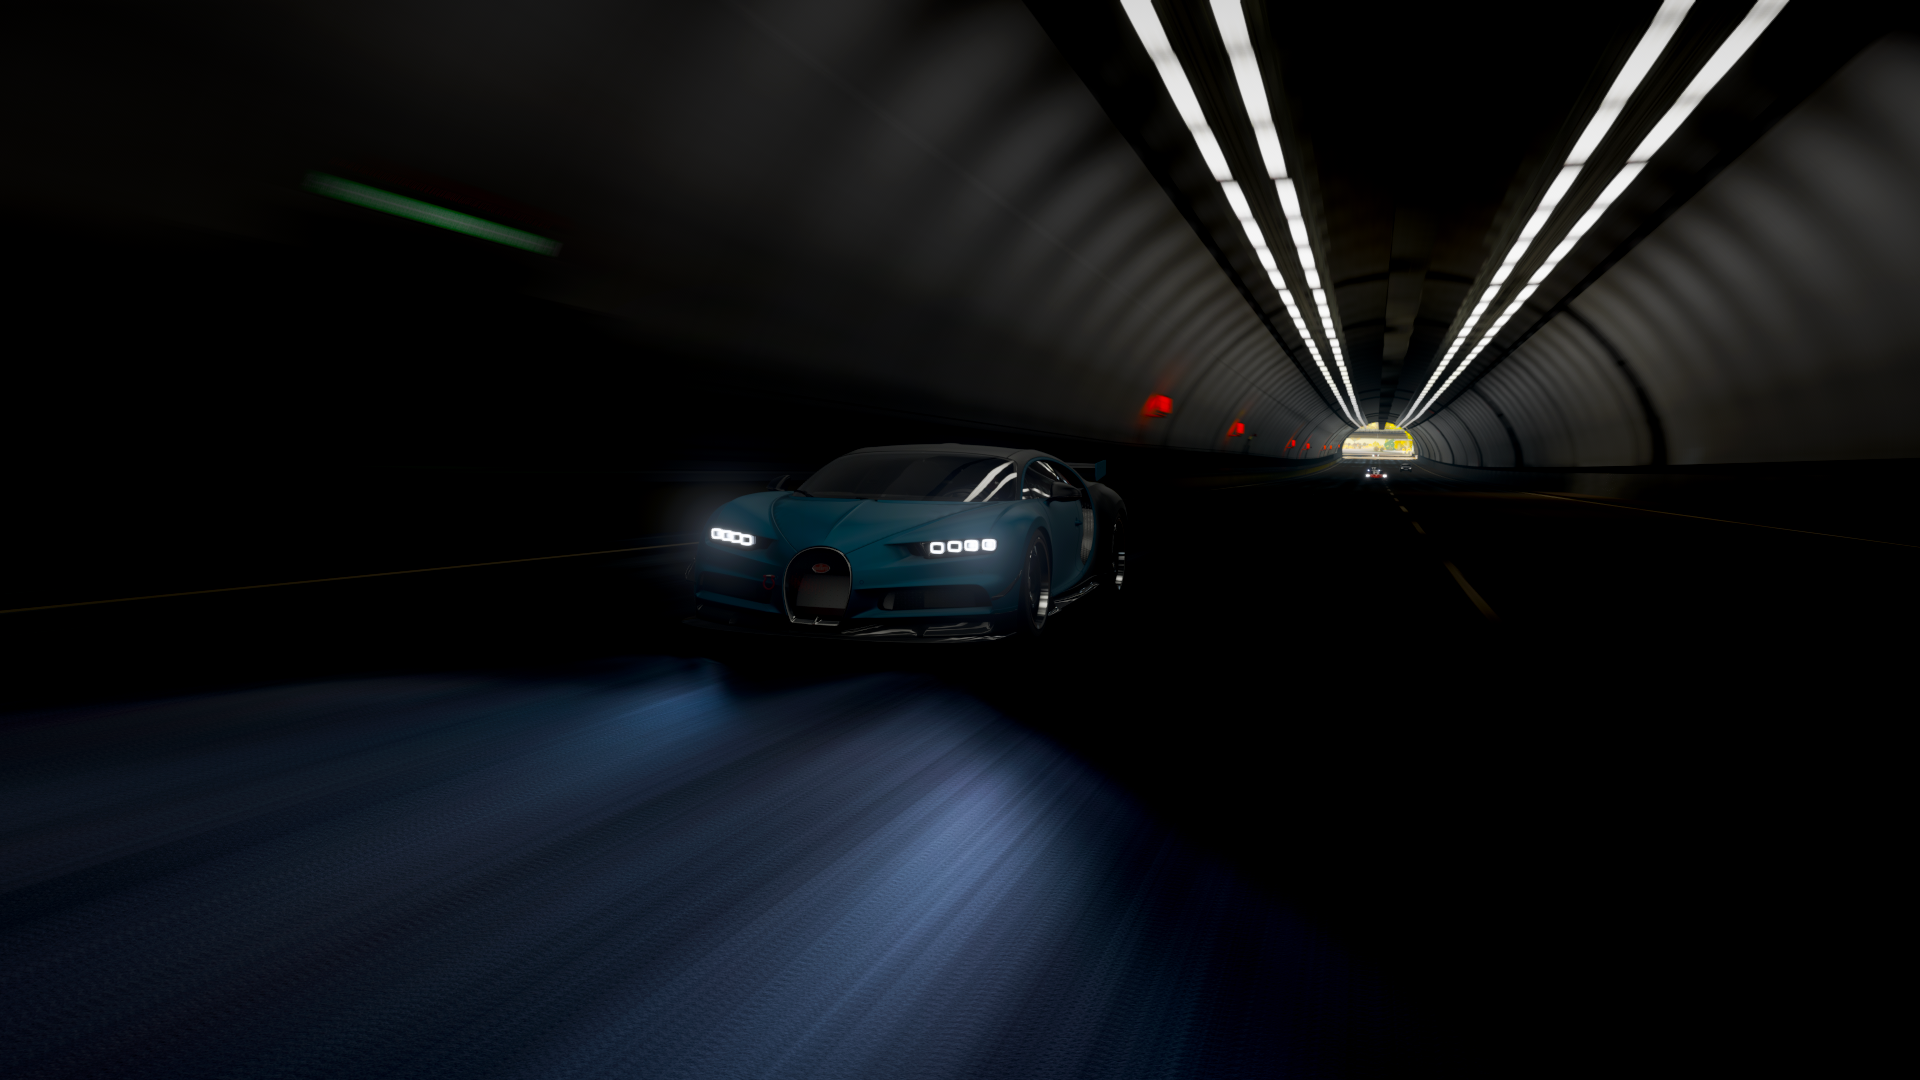 General 1920x1080 Forza Horizon 4 video games Bugatti Bugatti Chiron car tunnel driving